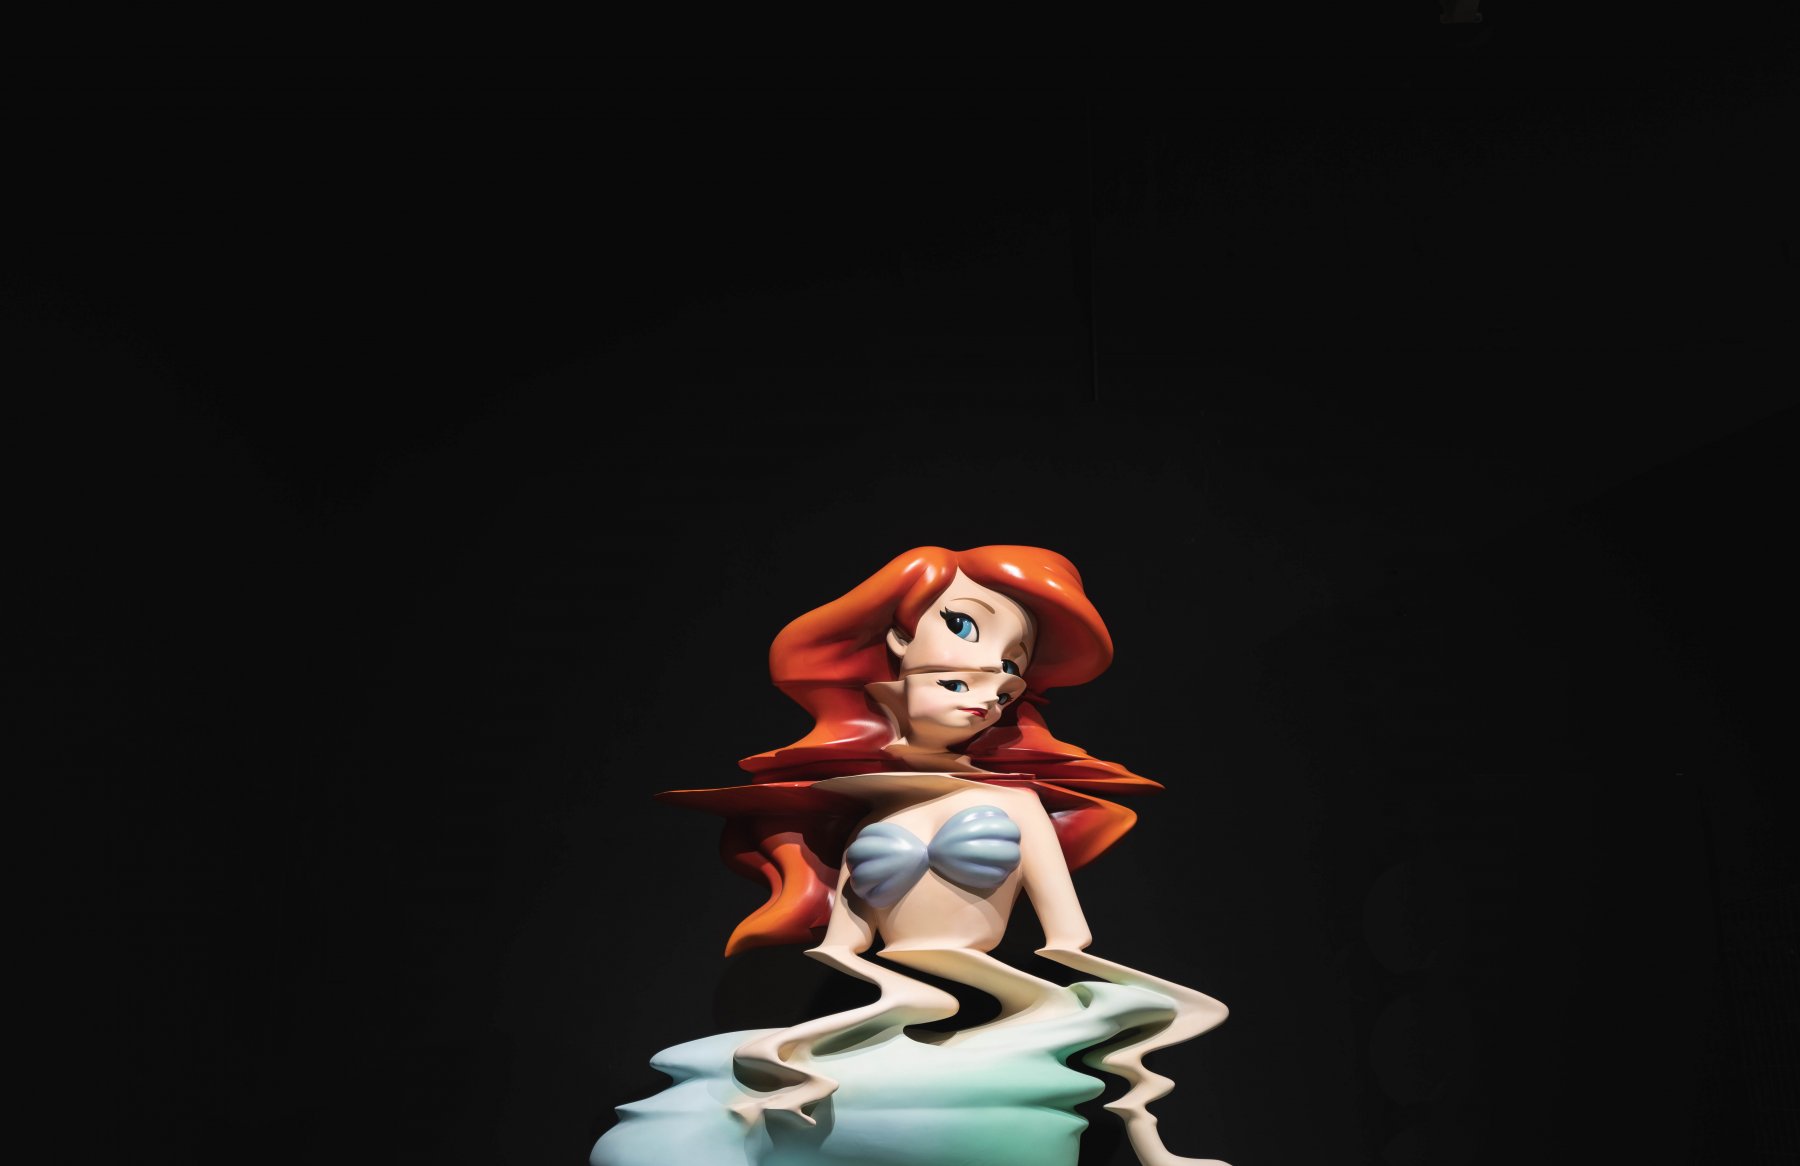 Den Disney Charakter "Ariel" erweckt Banksy als zerlaufene Skulptur zum Leben.  – ©wunderland media GmbH